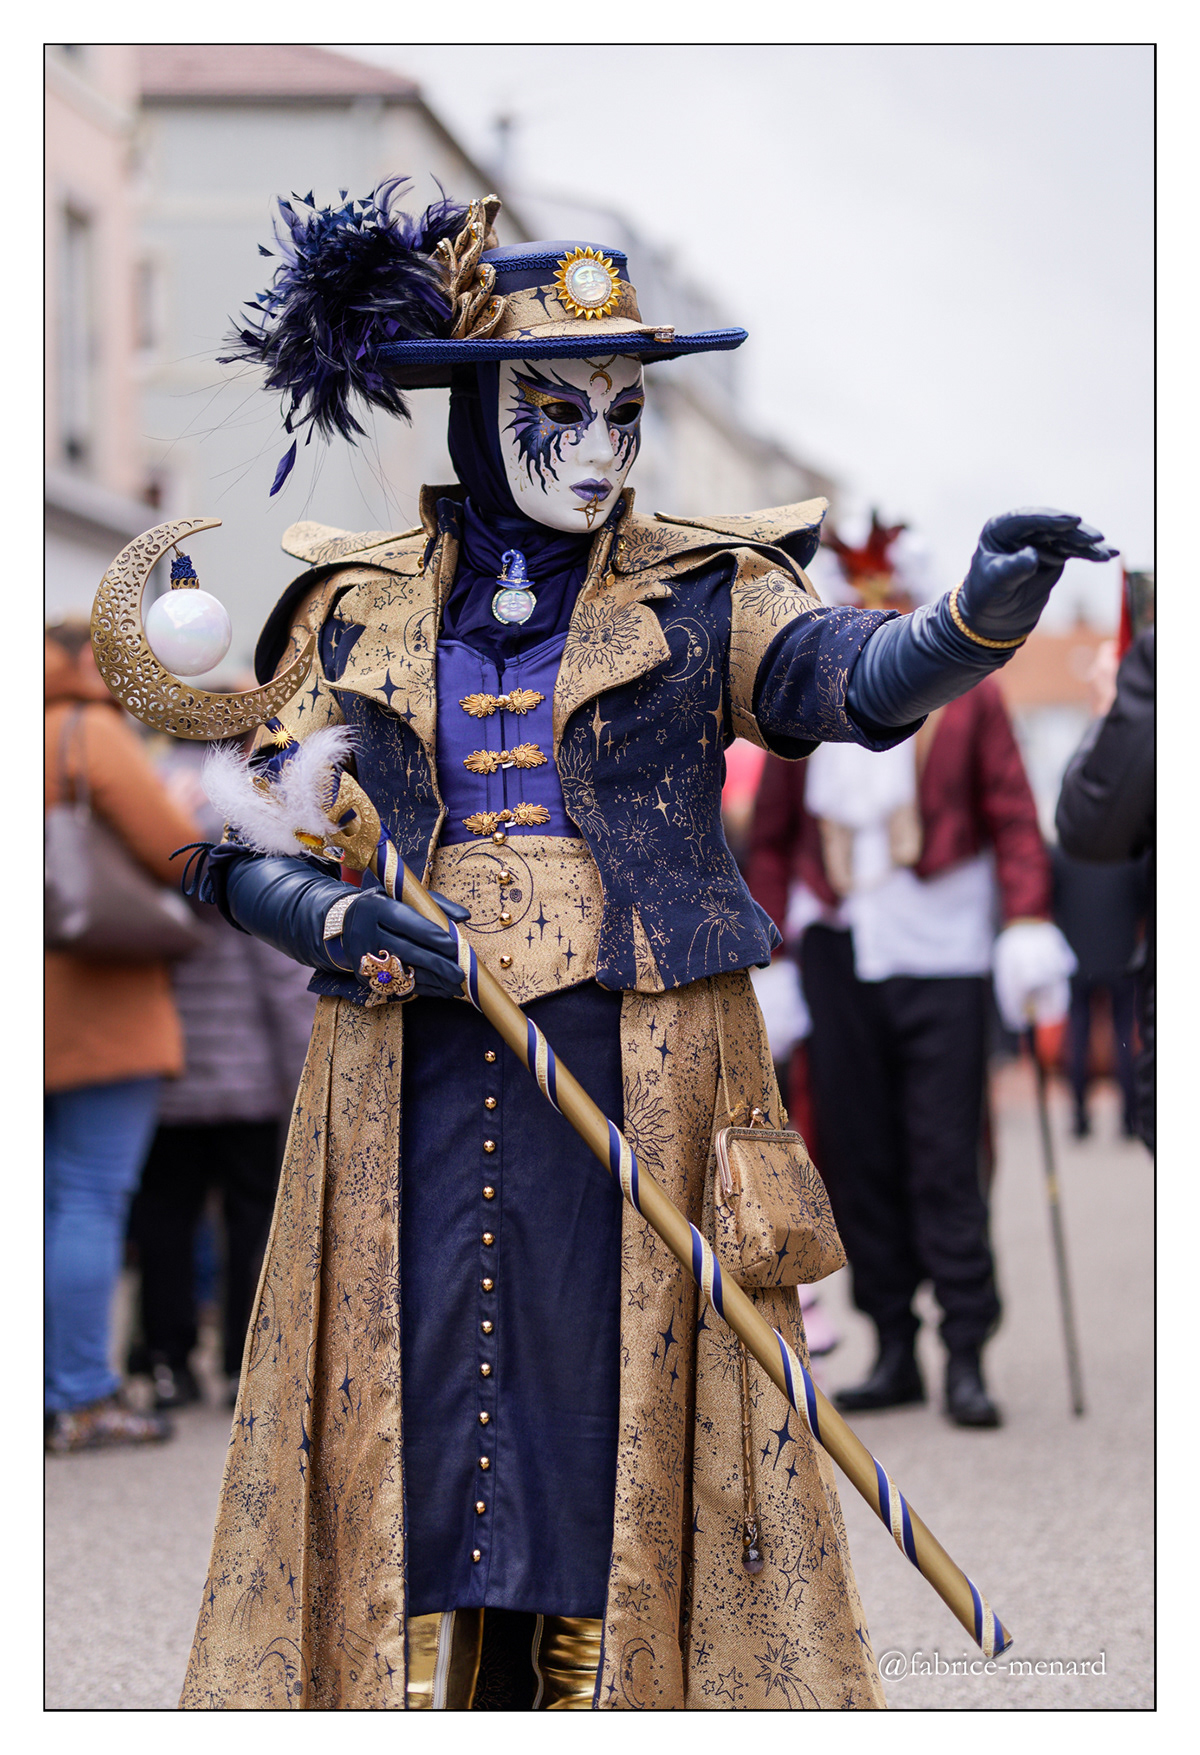 Carnaval Masques costume Masque portrait costumes fête de rue Vosges remiremont Carnaval vénitien